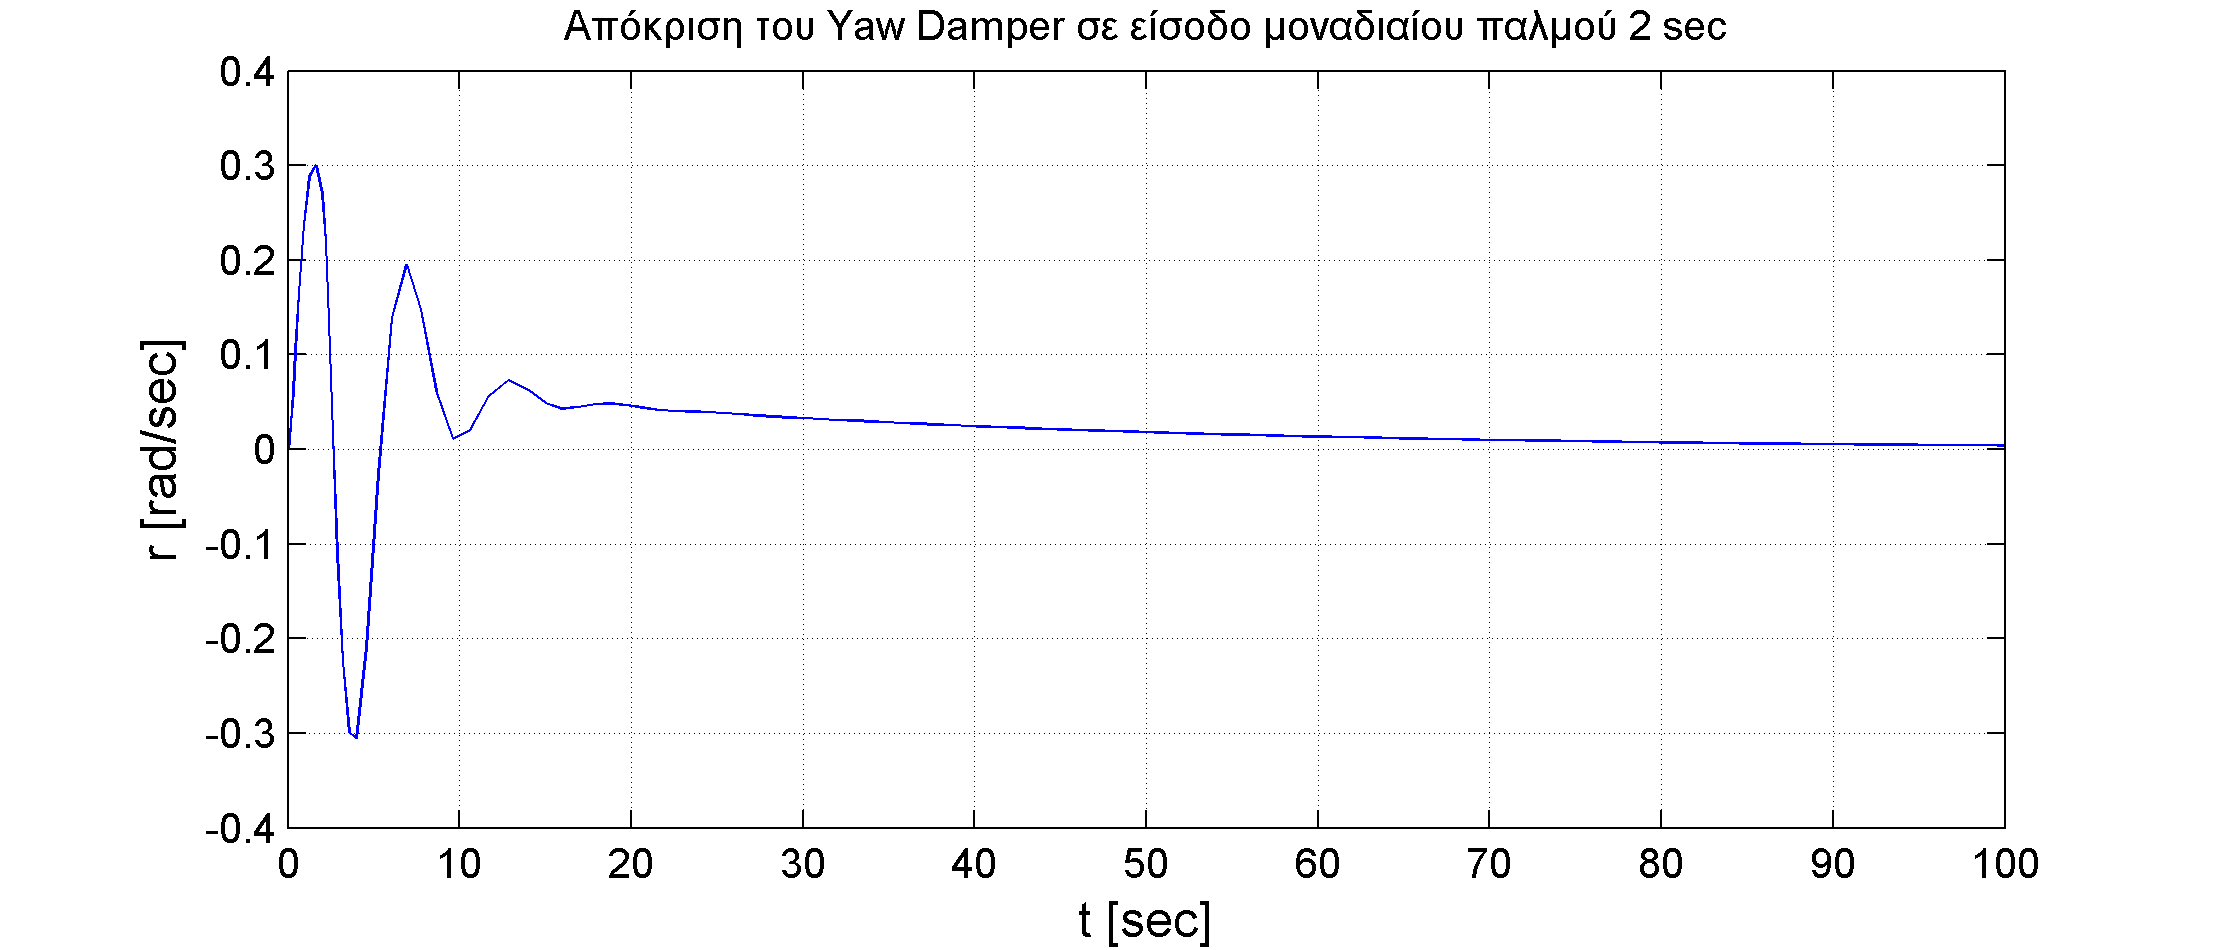 Η εικόνα δεν εμφανίζεται/Image is not displayed - Απόκριση ρυθμού εκτροπής r σε είσοδο μοναδιαίου παλμού 2 sec του πηδαλίου εκτροπής / r response, yaw damper, rudder pulse input